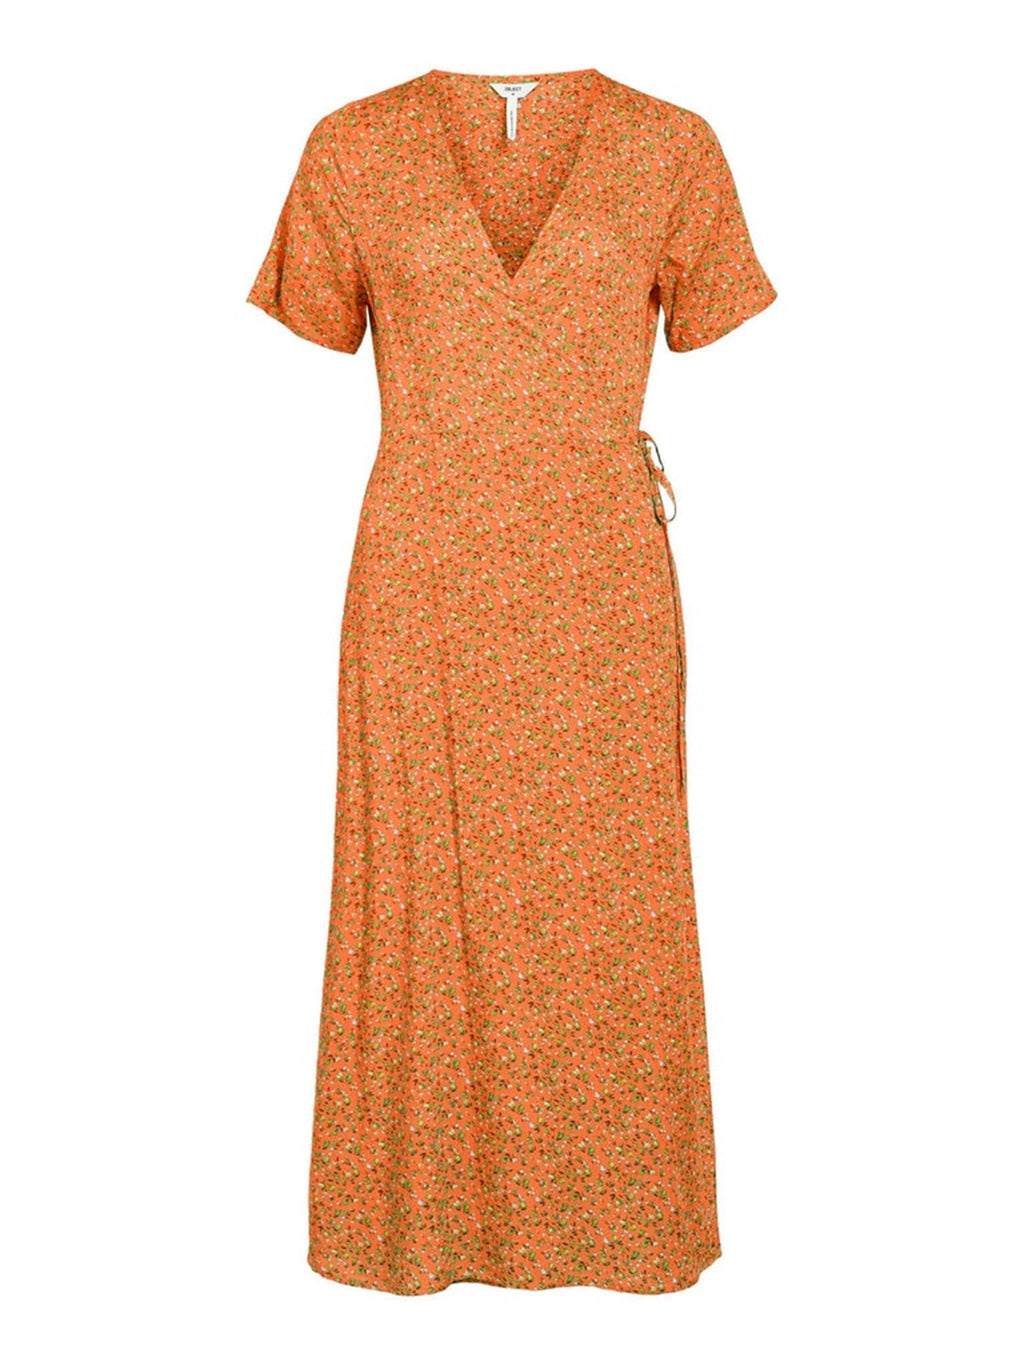 Ema Elise Wrap Dress - Sunset autunnale